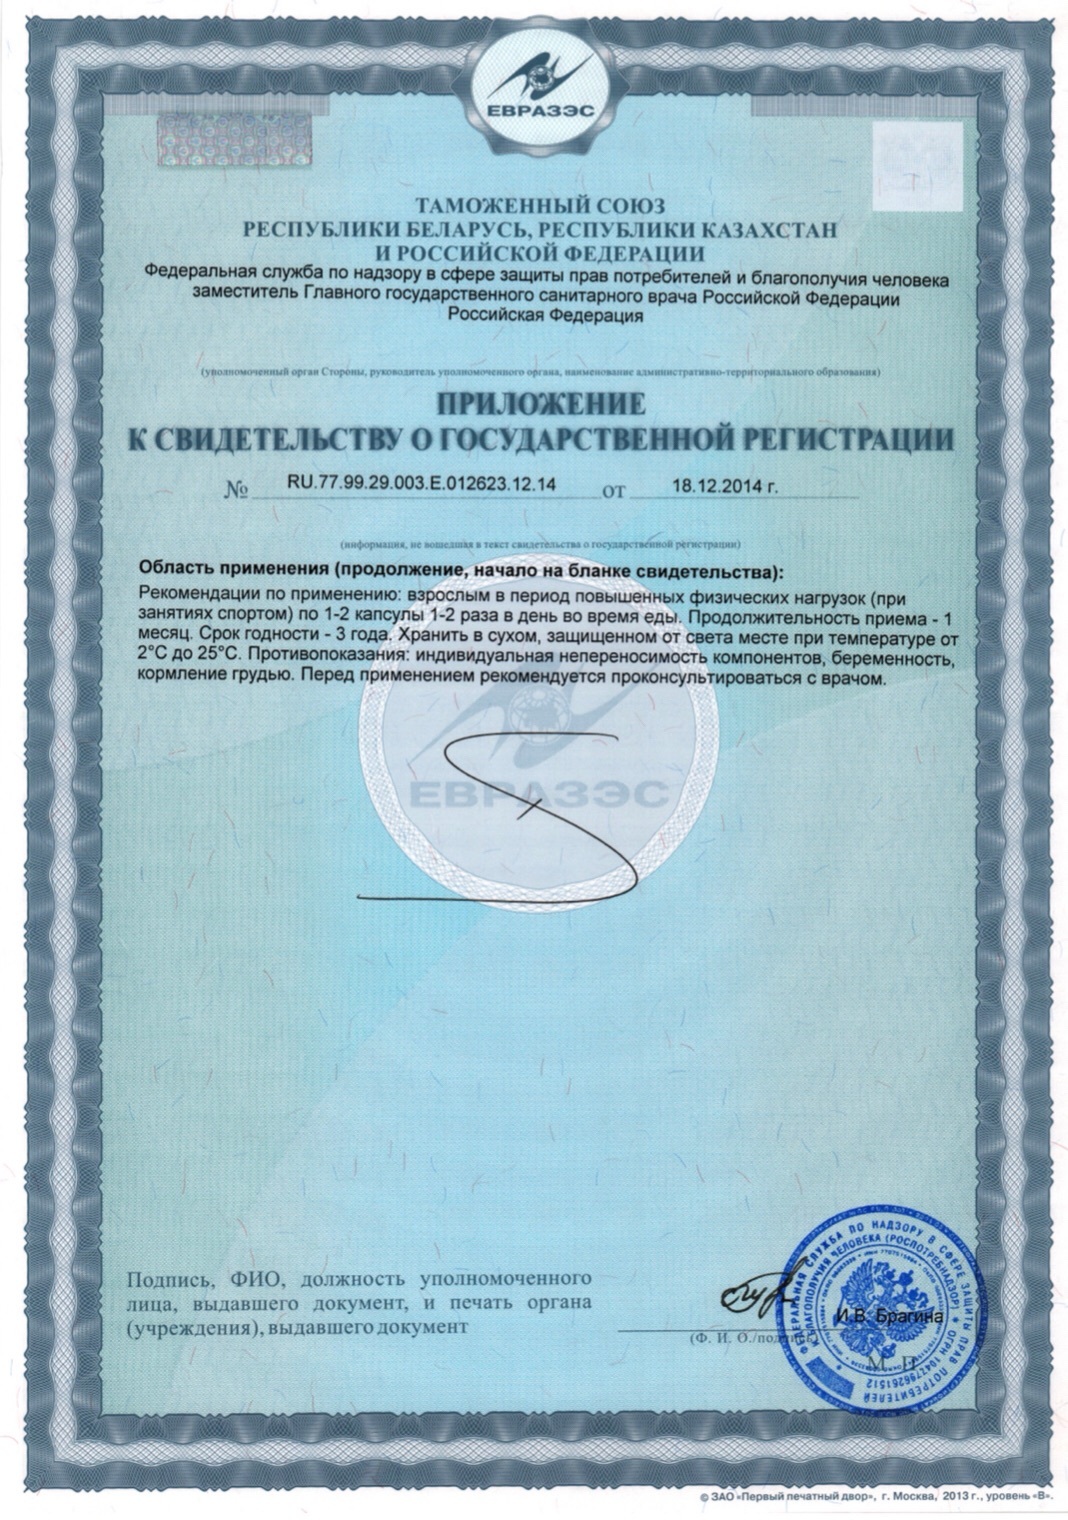 Спорт 3 Плюс® Сертификат на Пептидный комплекс